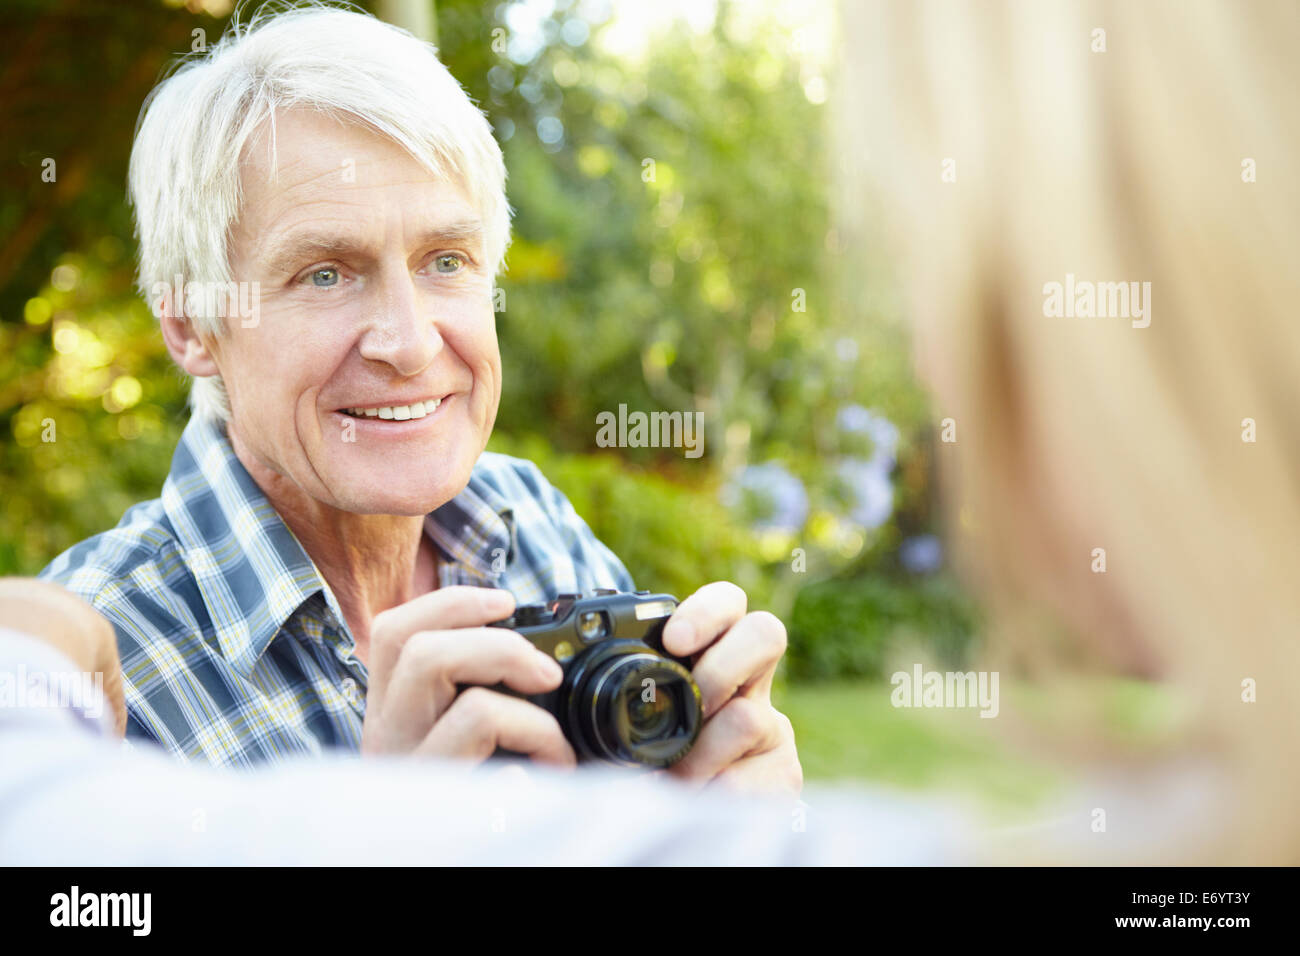 Senior couple taking photo outdoors Stock Photo